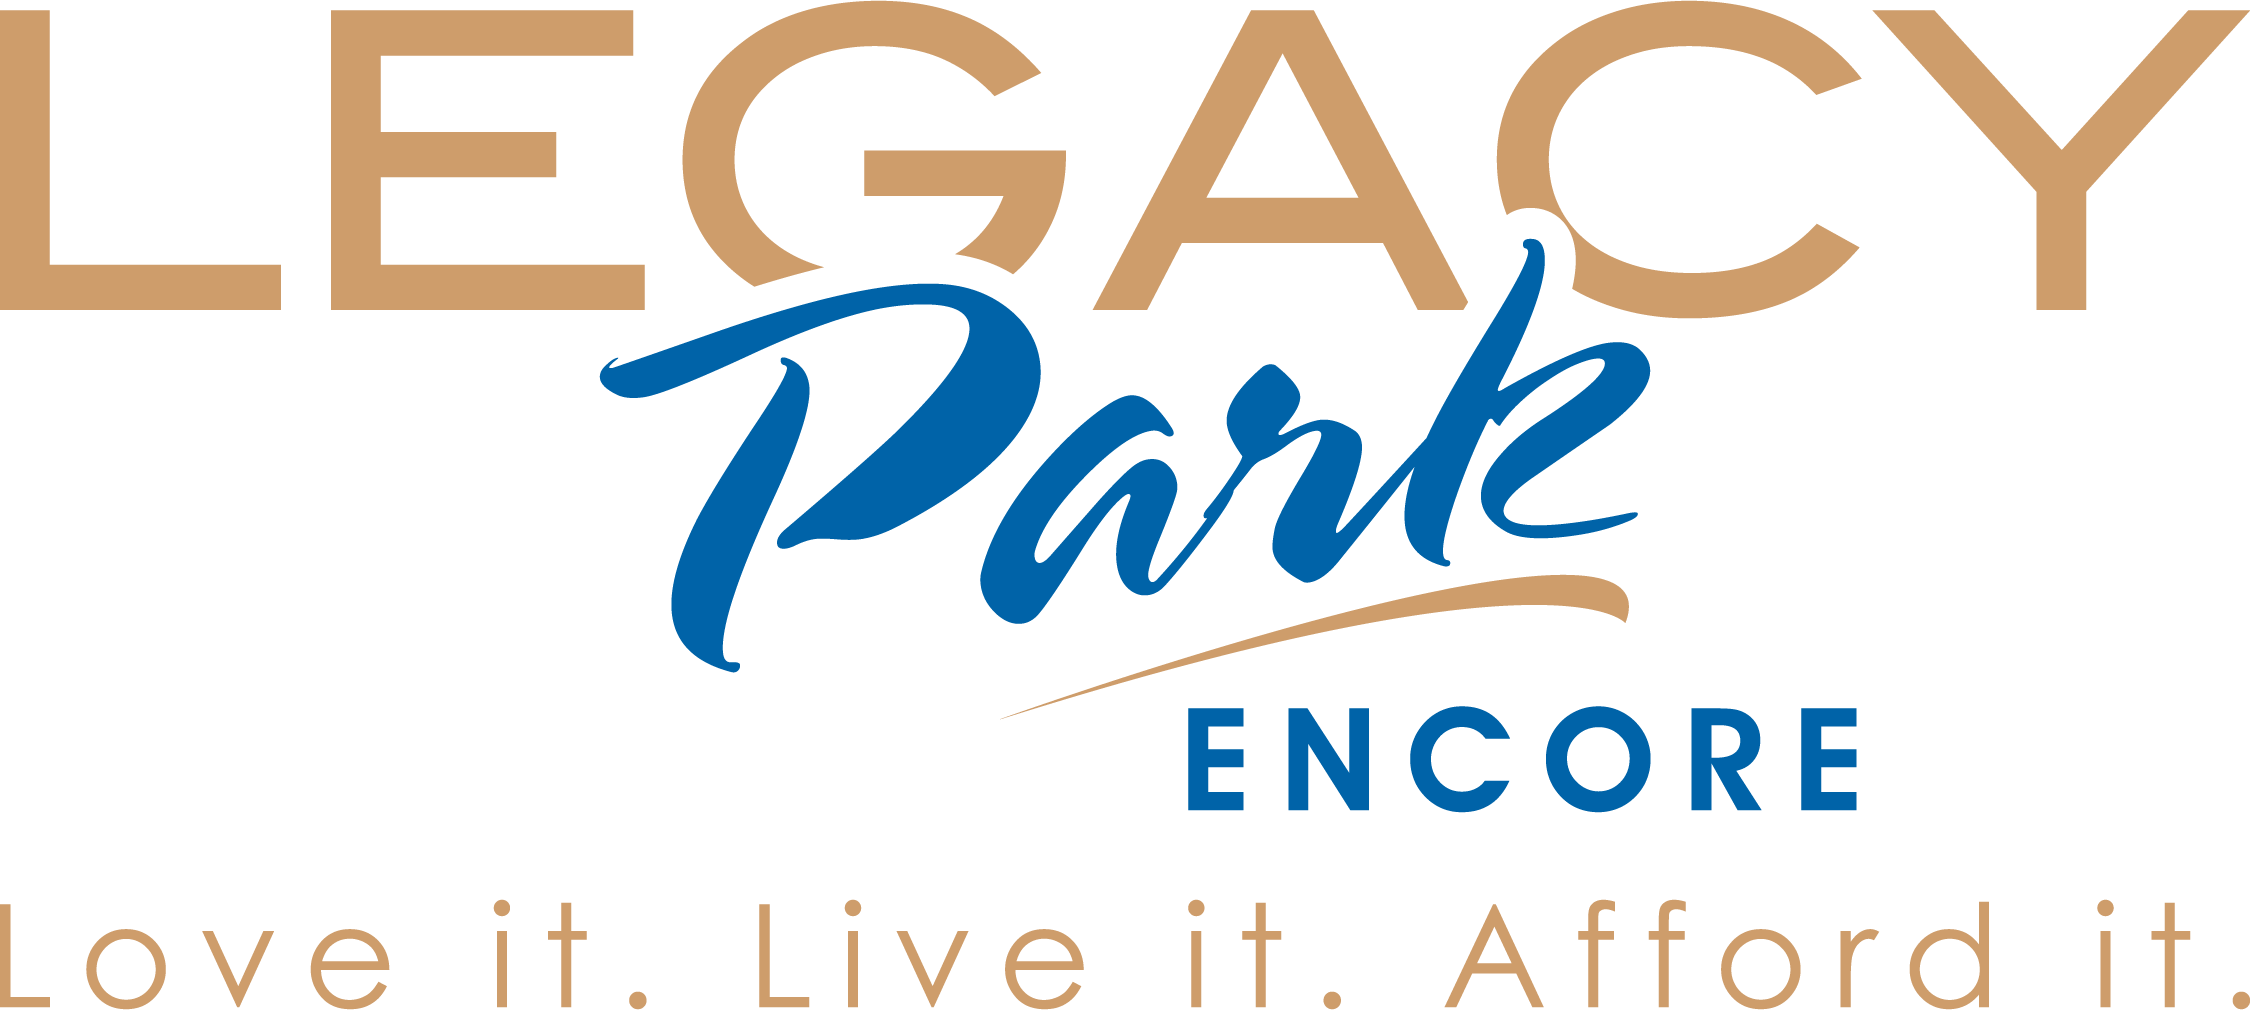 Legacy Park Encore